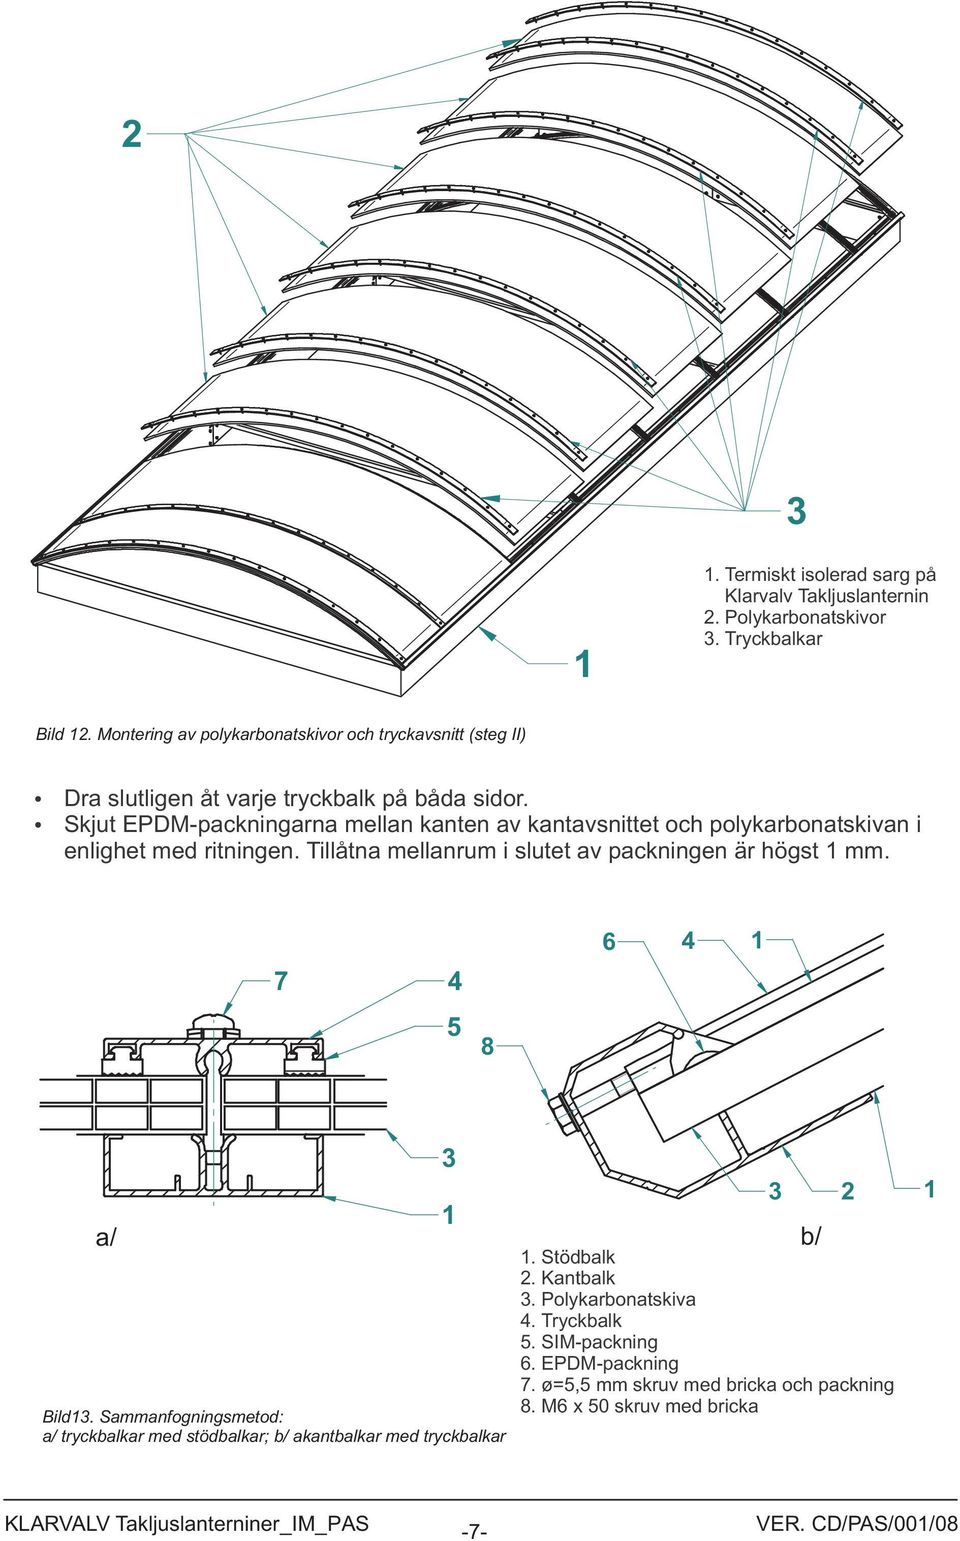 Skjut EPDM-packningarna mellan kanten av kantavsnittet och polykarbonatskivan i enlighet med ritningen.